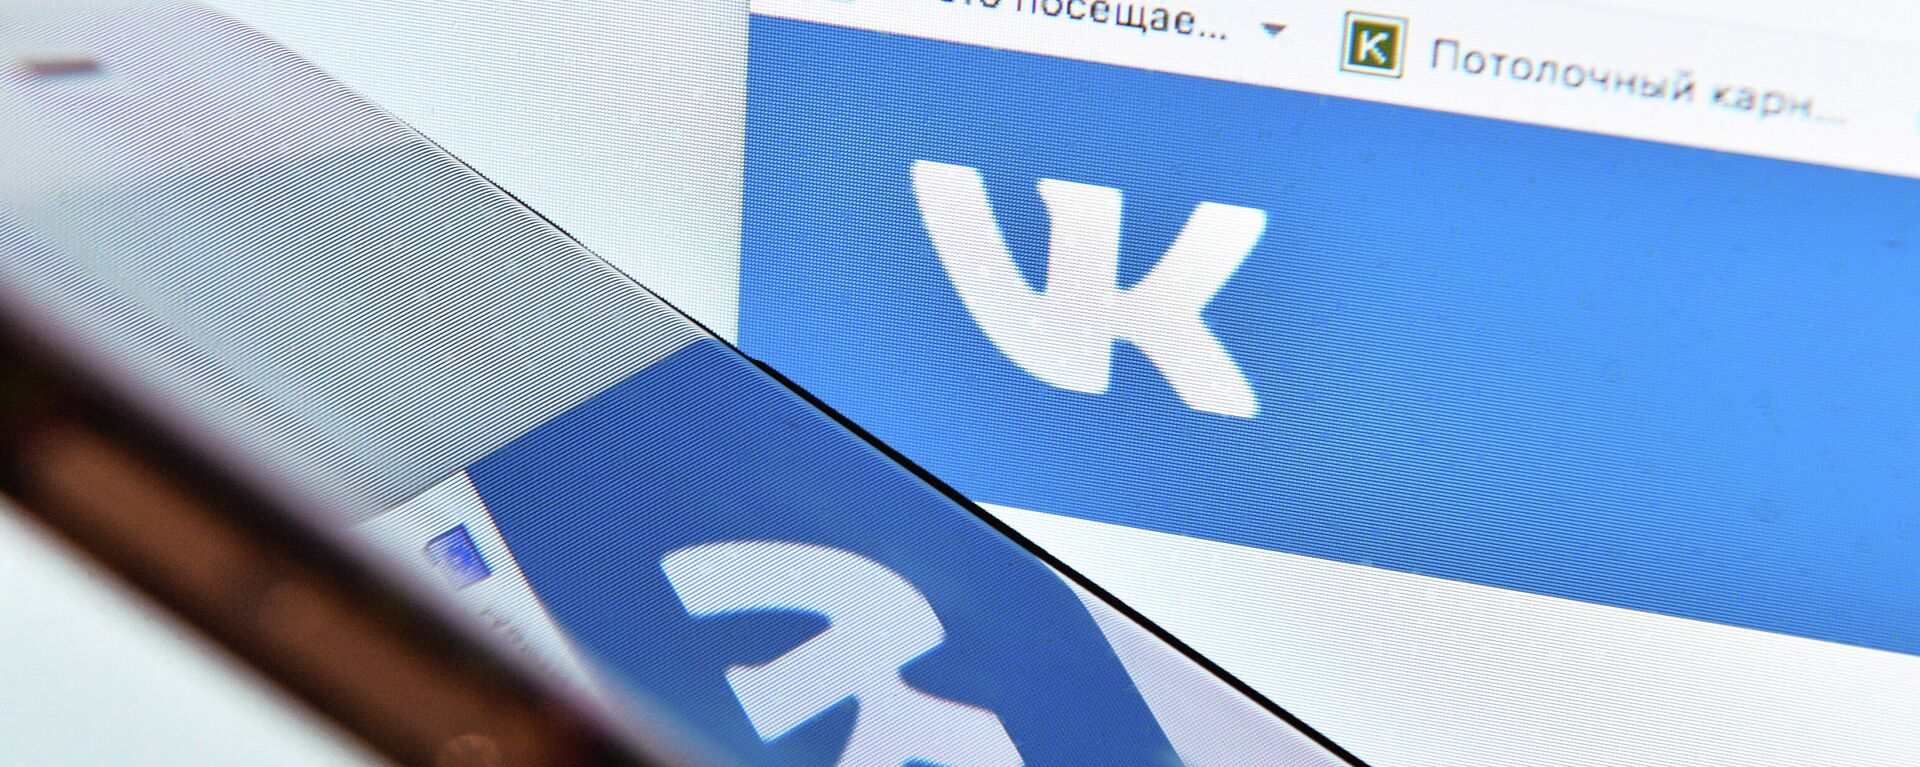 Страница социальной сети Вконтакте на экране компьютера - Sputnik Узбекистан, 1920, 30.05.2021